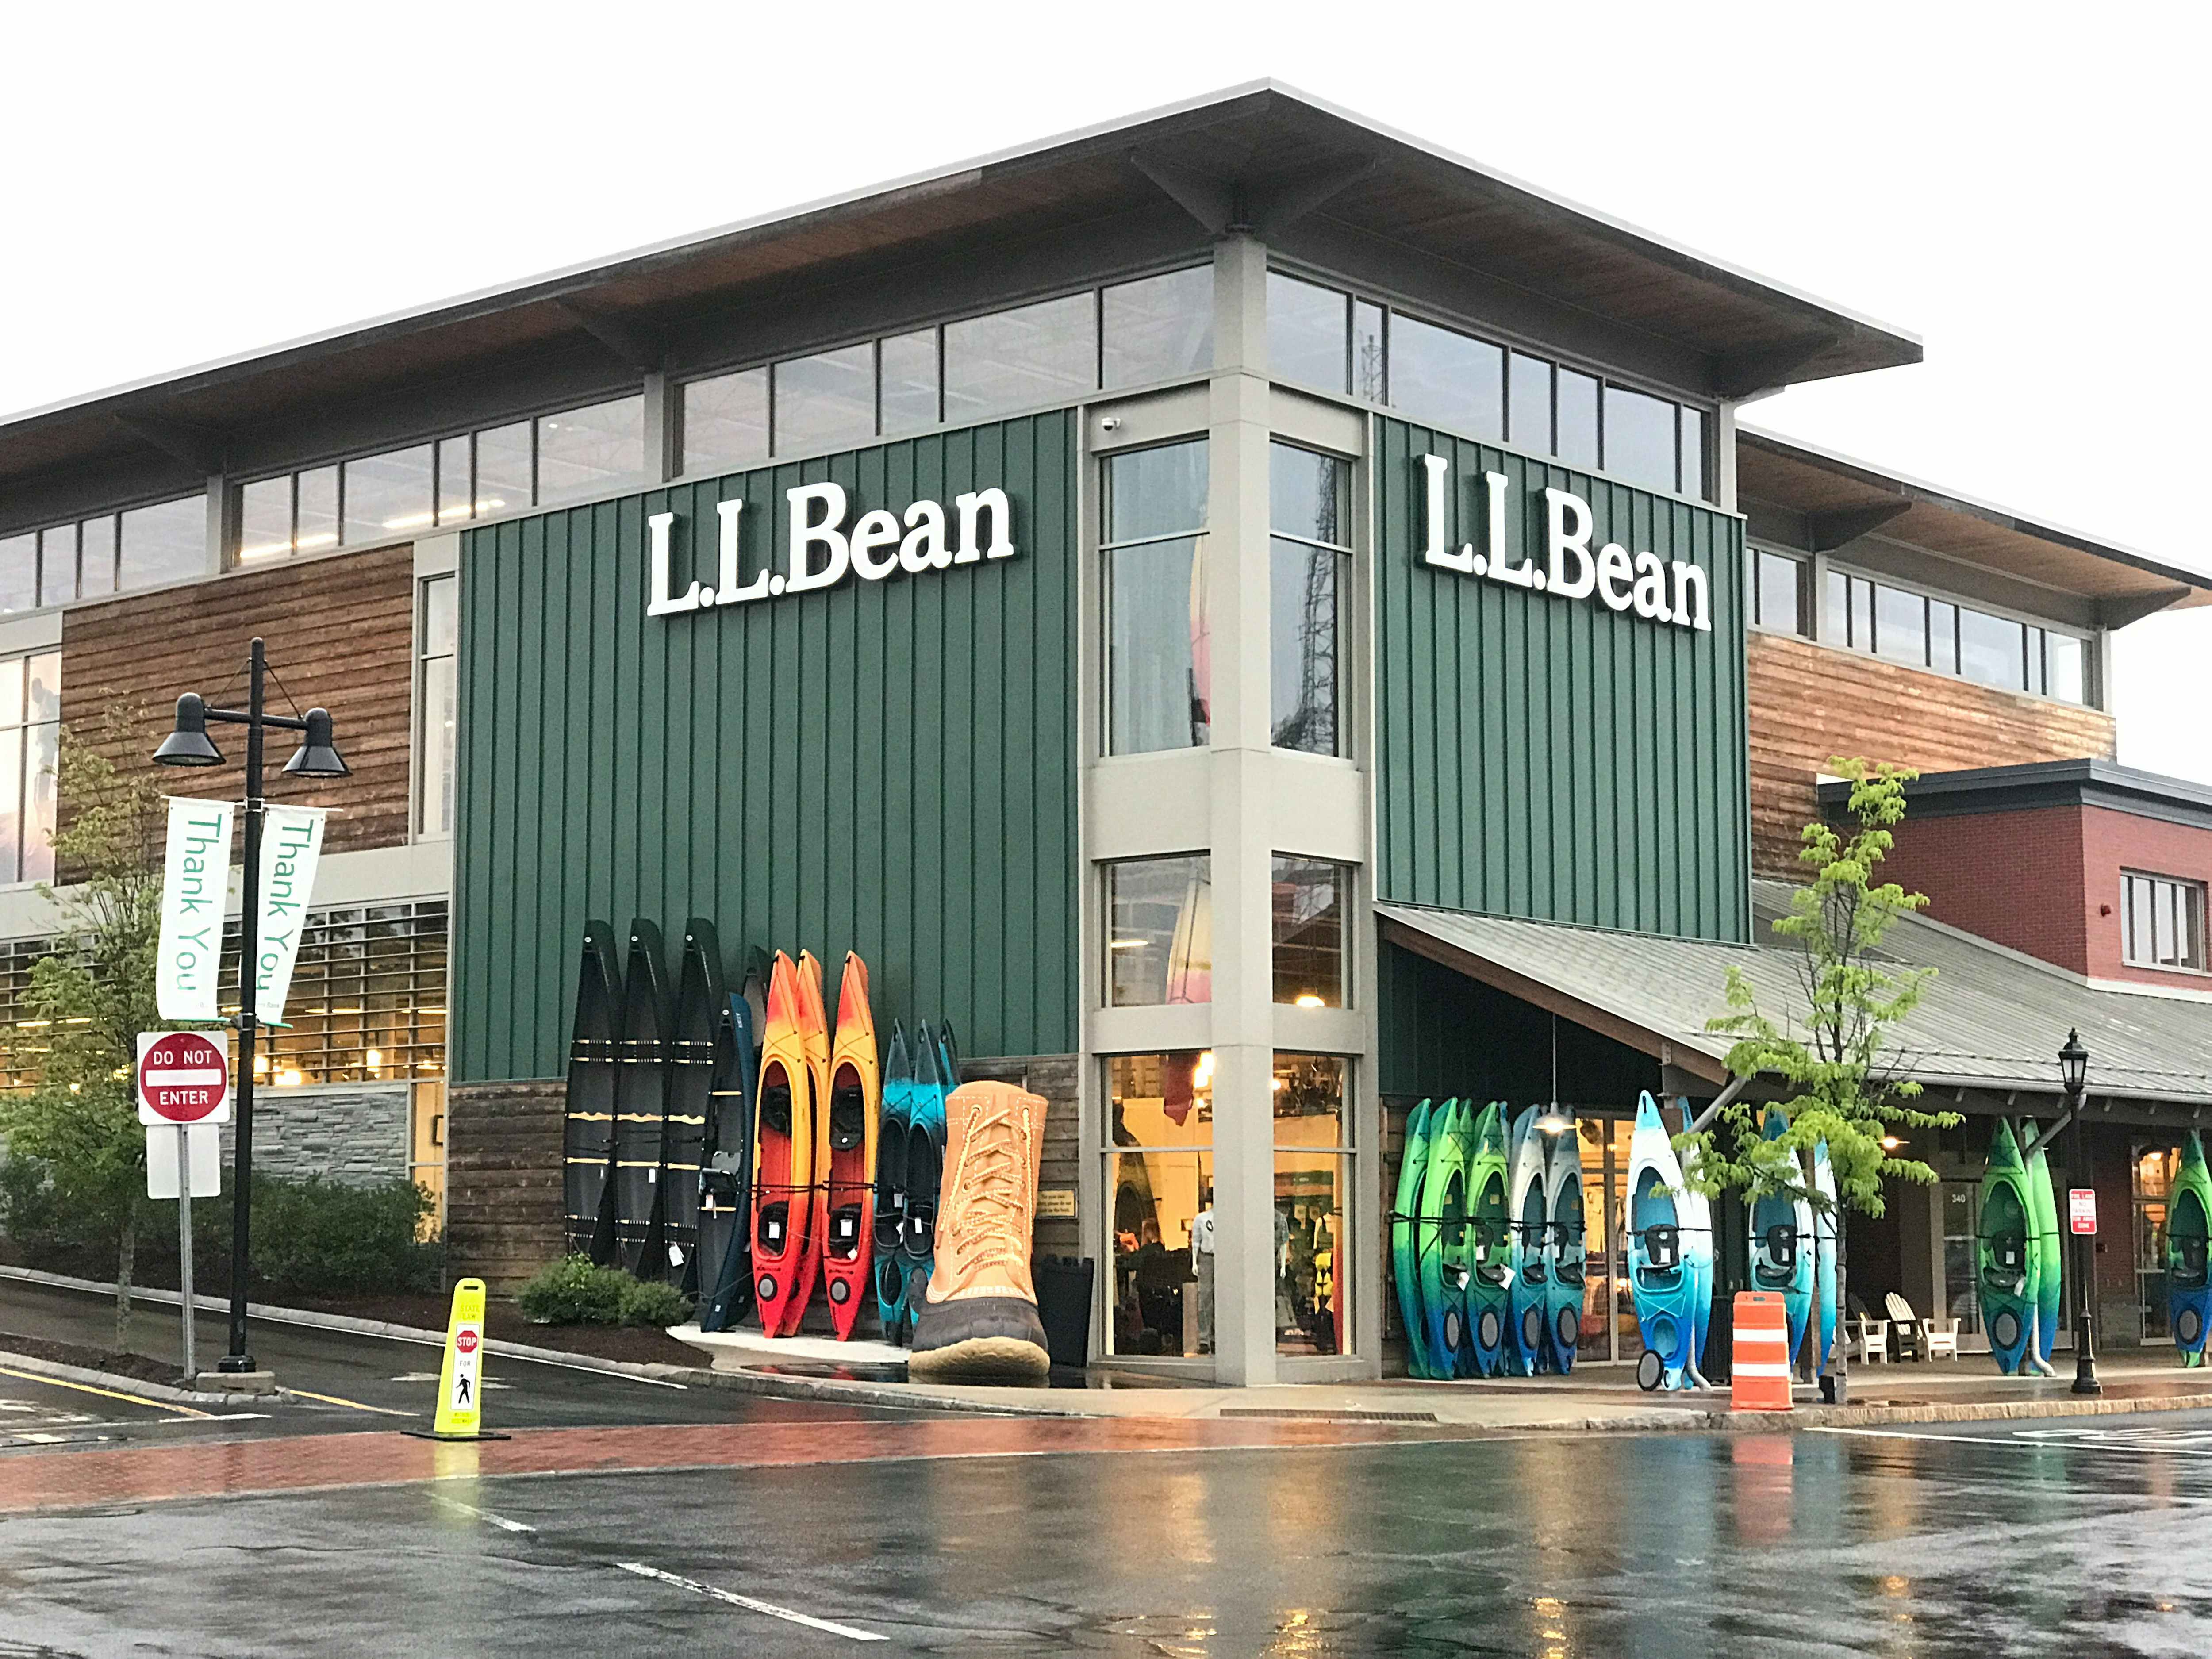 L.L.Bean storefront